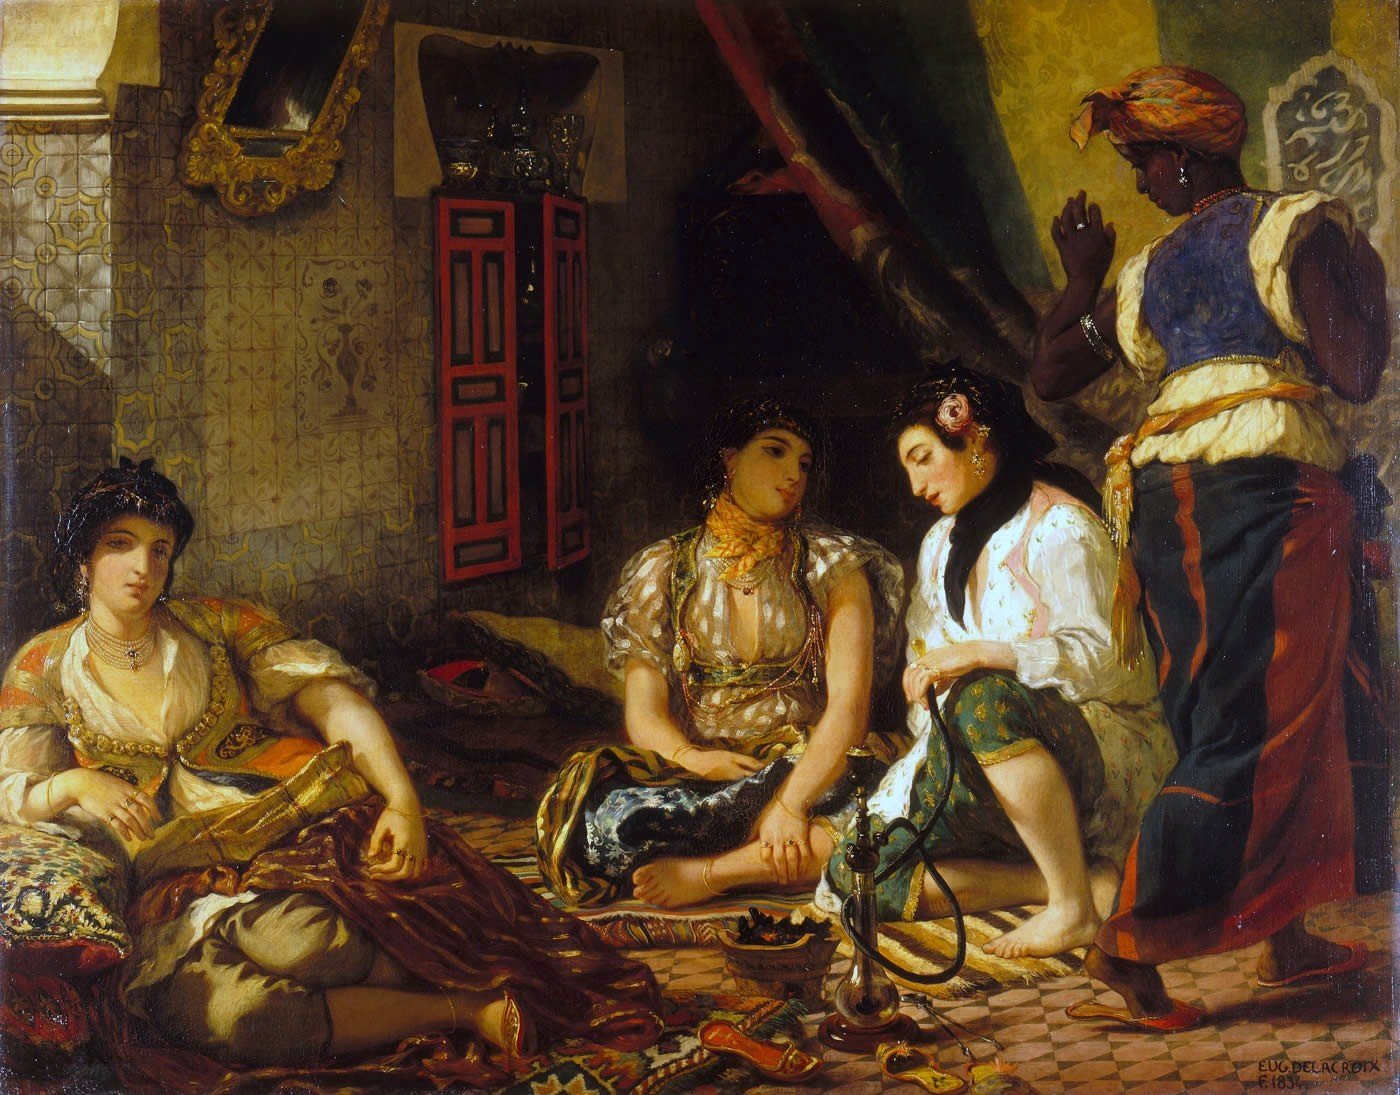 מתוך היצירה "הנשים של אלג'יר" של אז'ן דלקרואה, מ-1834